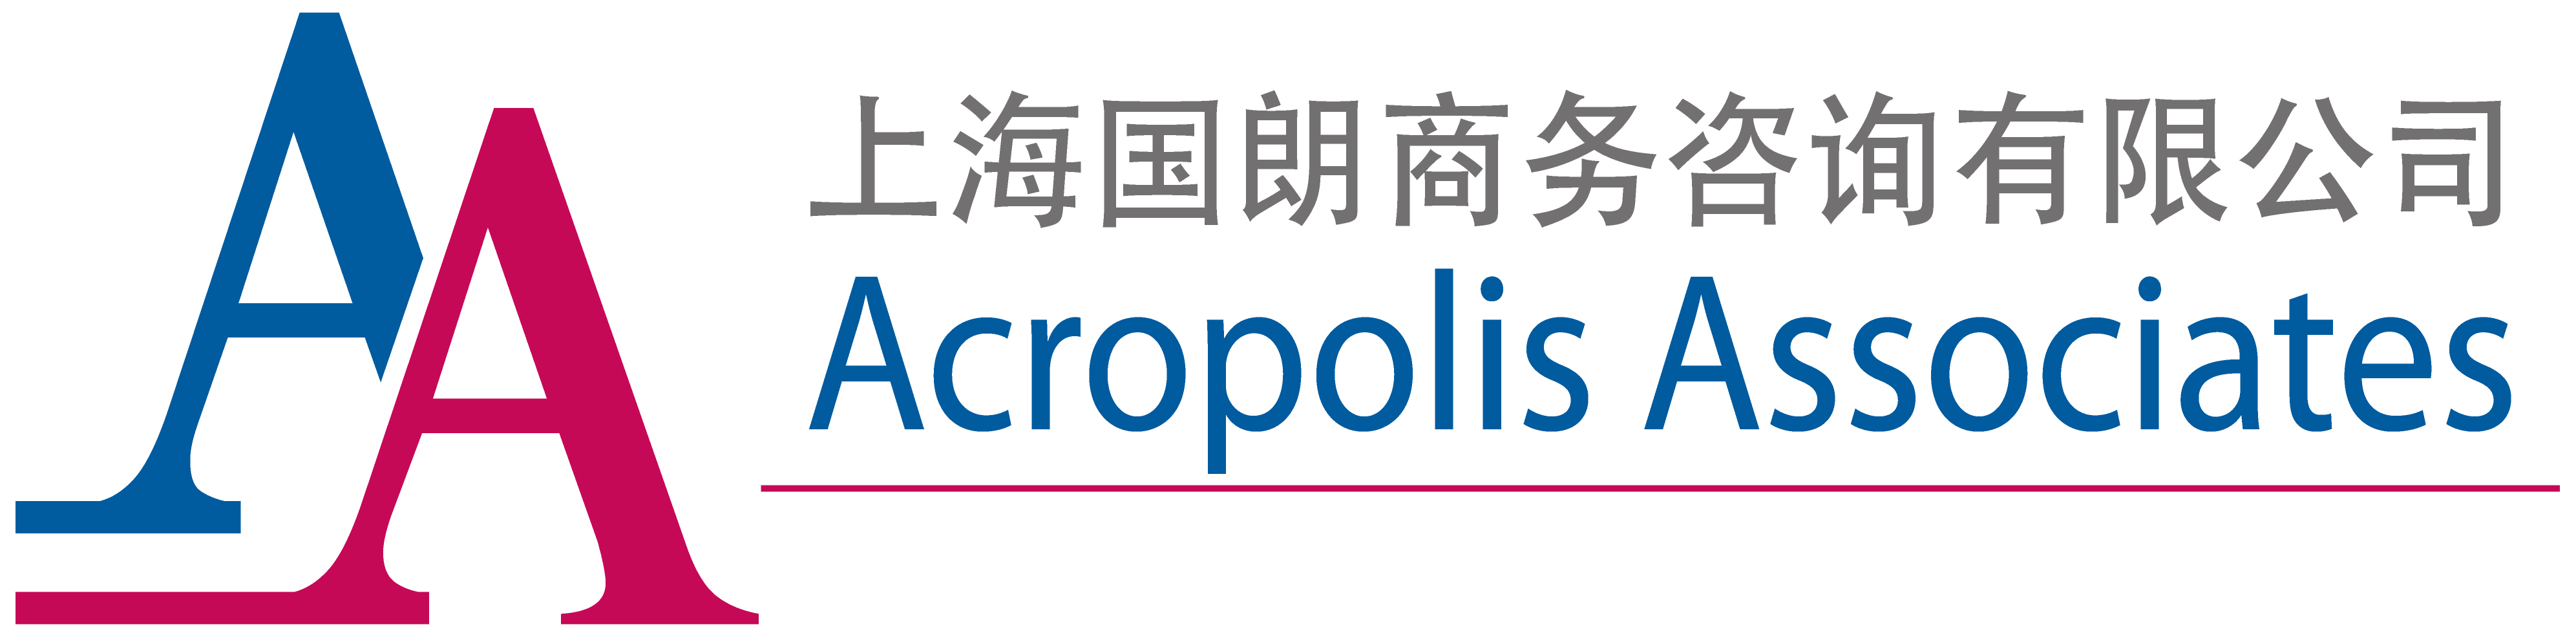 Acropolis Associates/Acropolis Entrepreneur Center